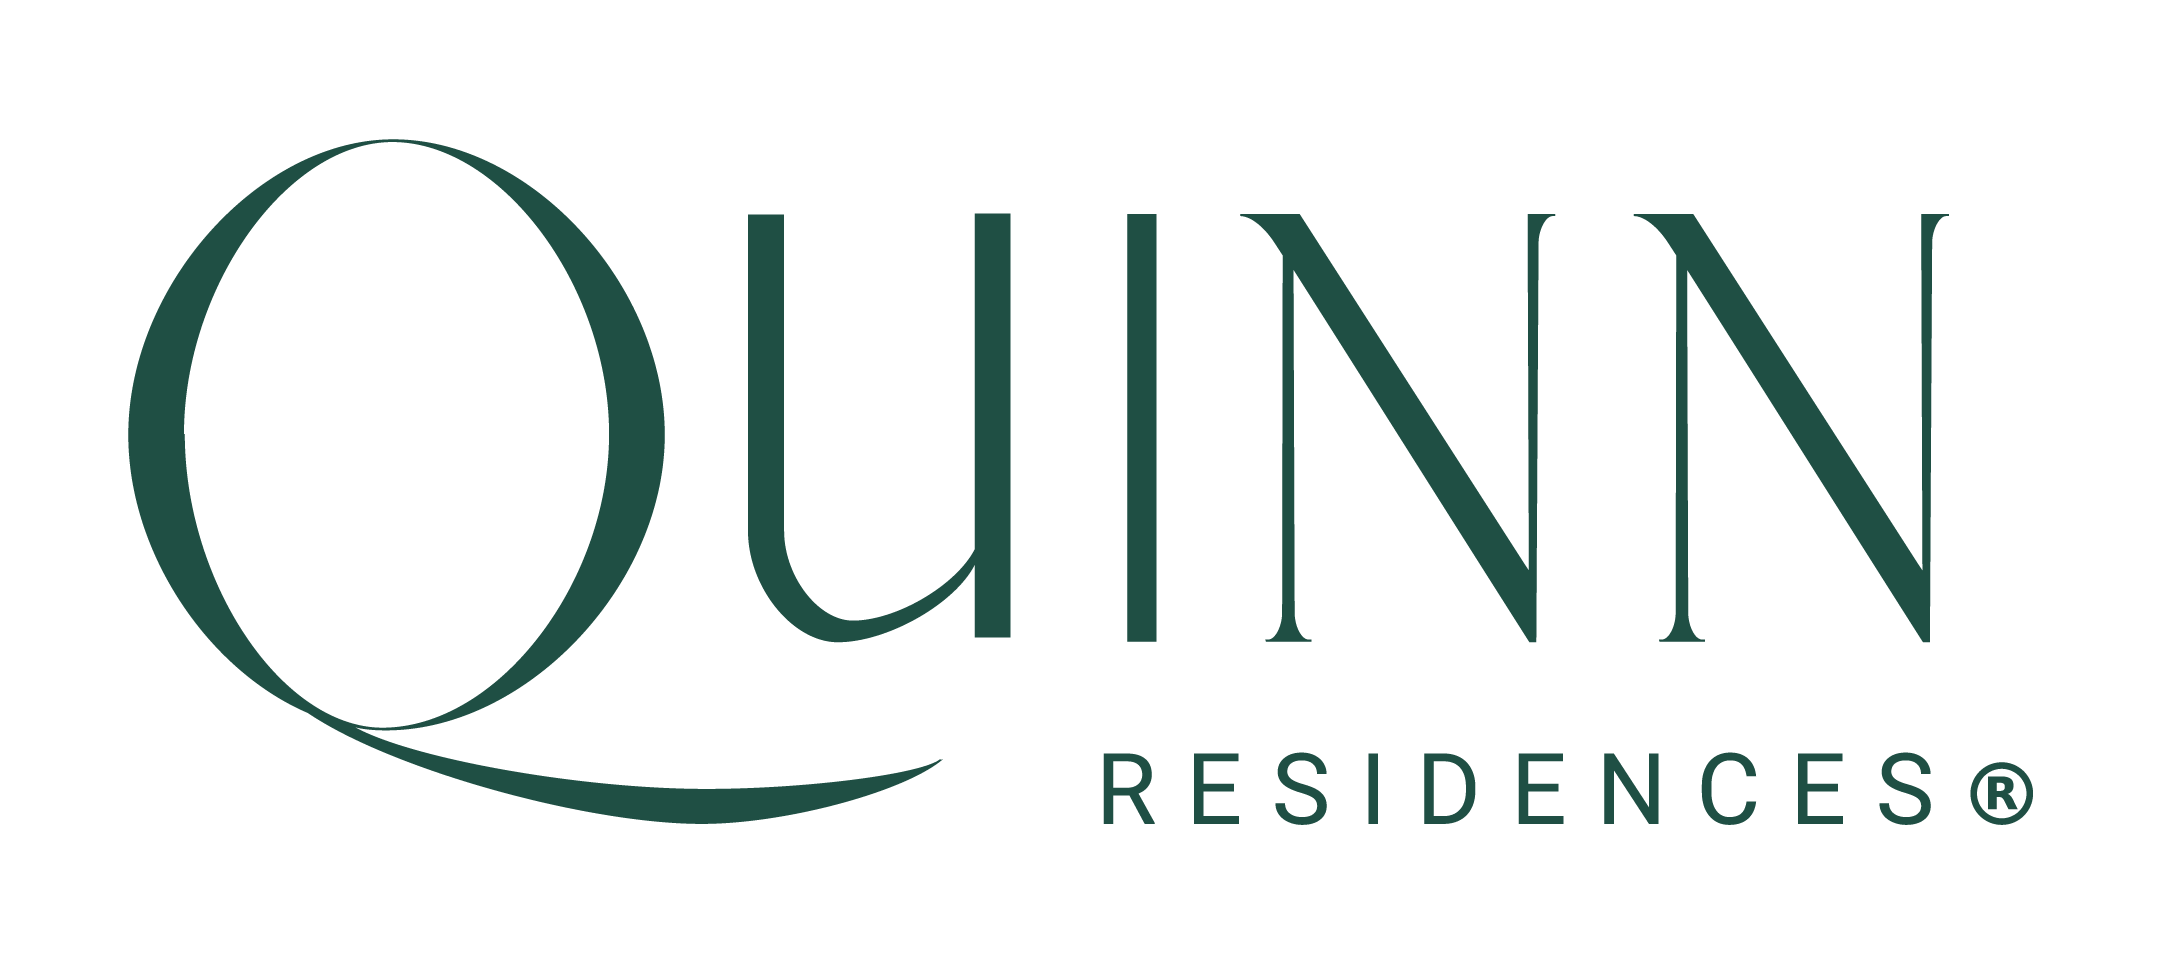 Quinn Residences